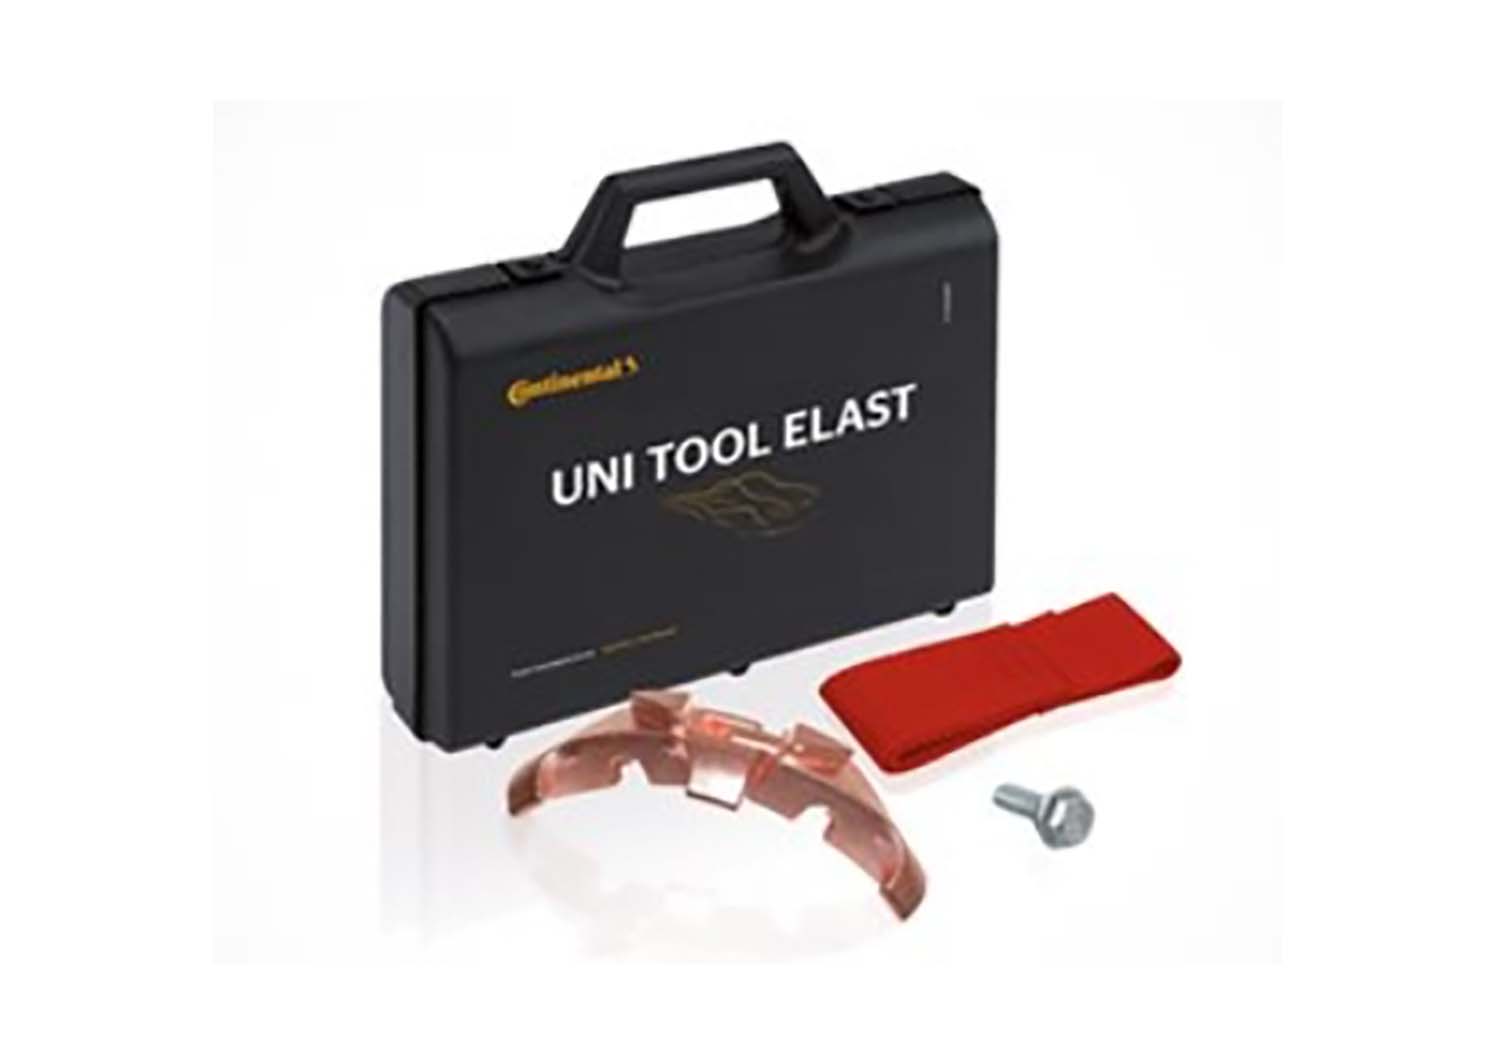 Uni tools. CONTITECH tool06 инструмент. Uni Tool Elast. Набор для замены ремней эласт. CONTITECH Tool 18 Tools приспособлением на ремень.